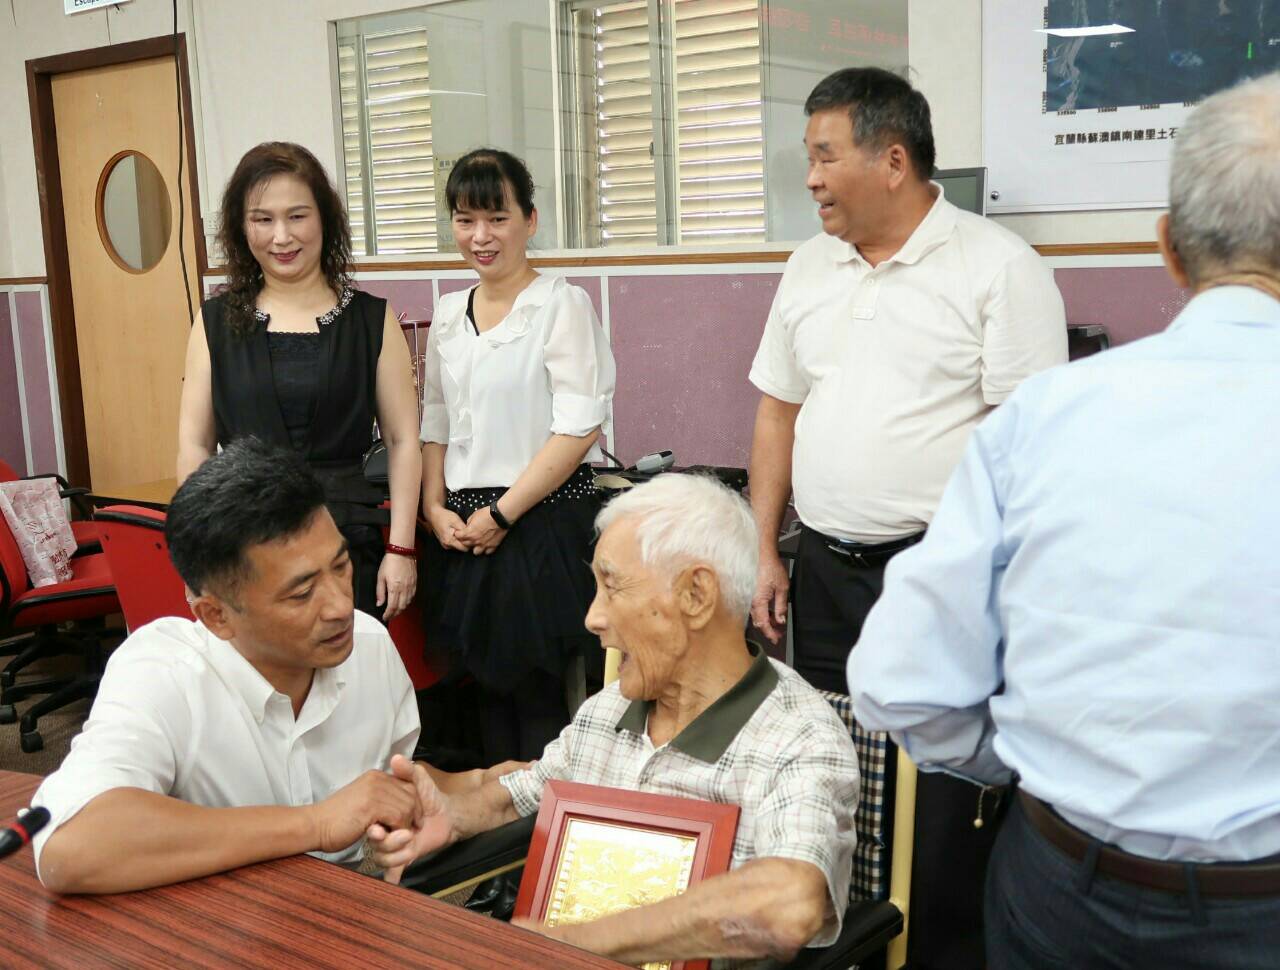 蕭阿添獲內政部表揚特優里長 96歲最高齡鄰長陳林阿對獲縣府表揚